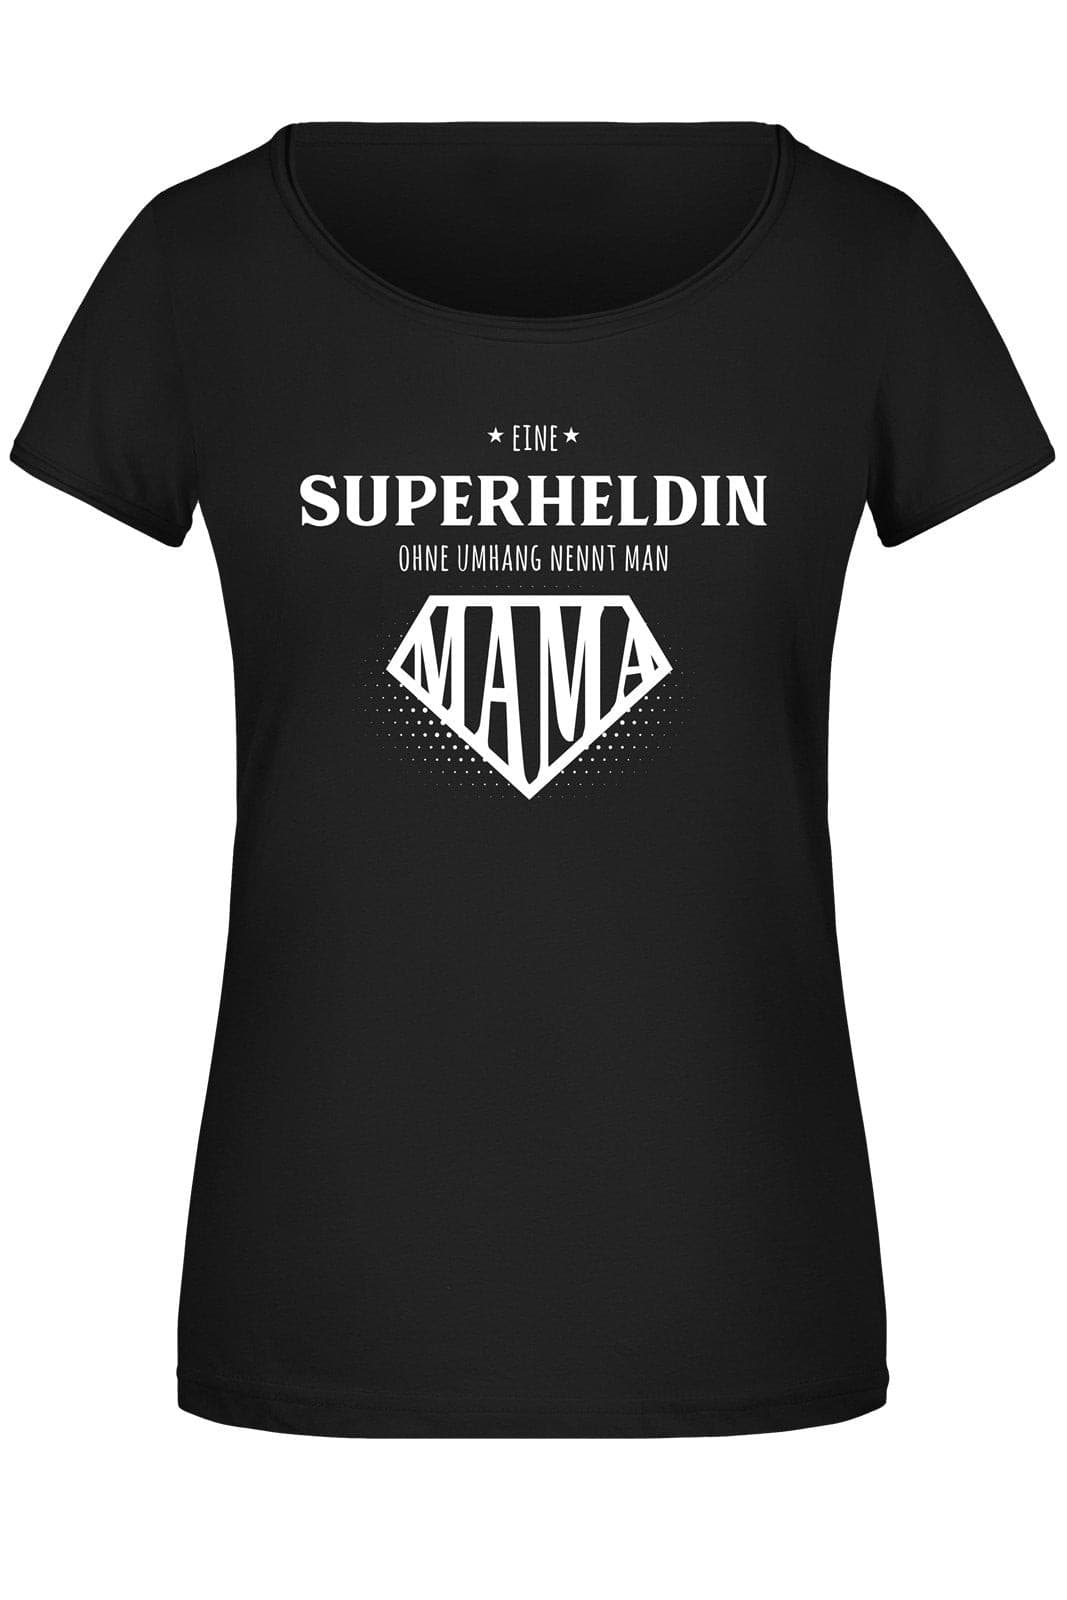 Bild: T-Shirt Damen - Eine Superheldin ohne Umhang nennt man Mama Geschenkidee